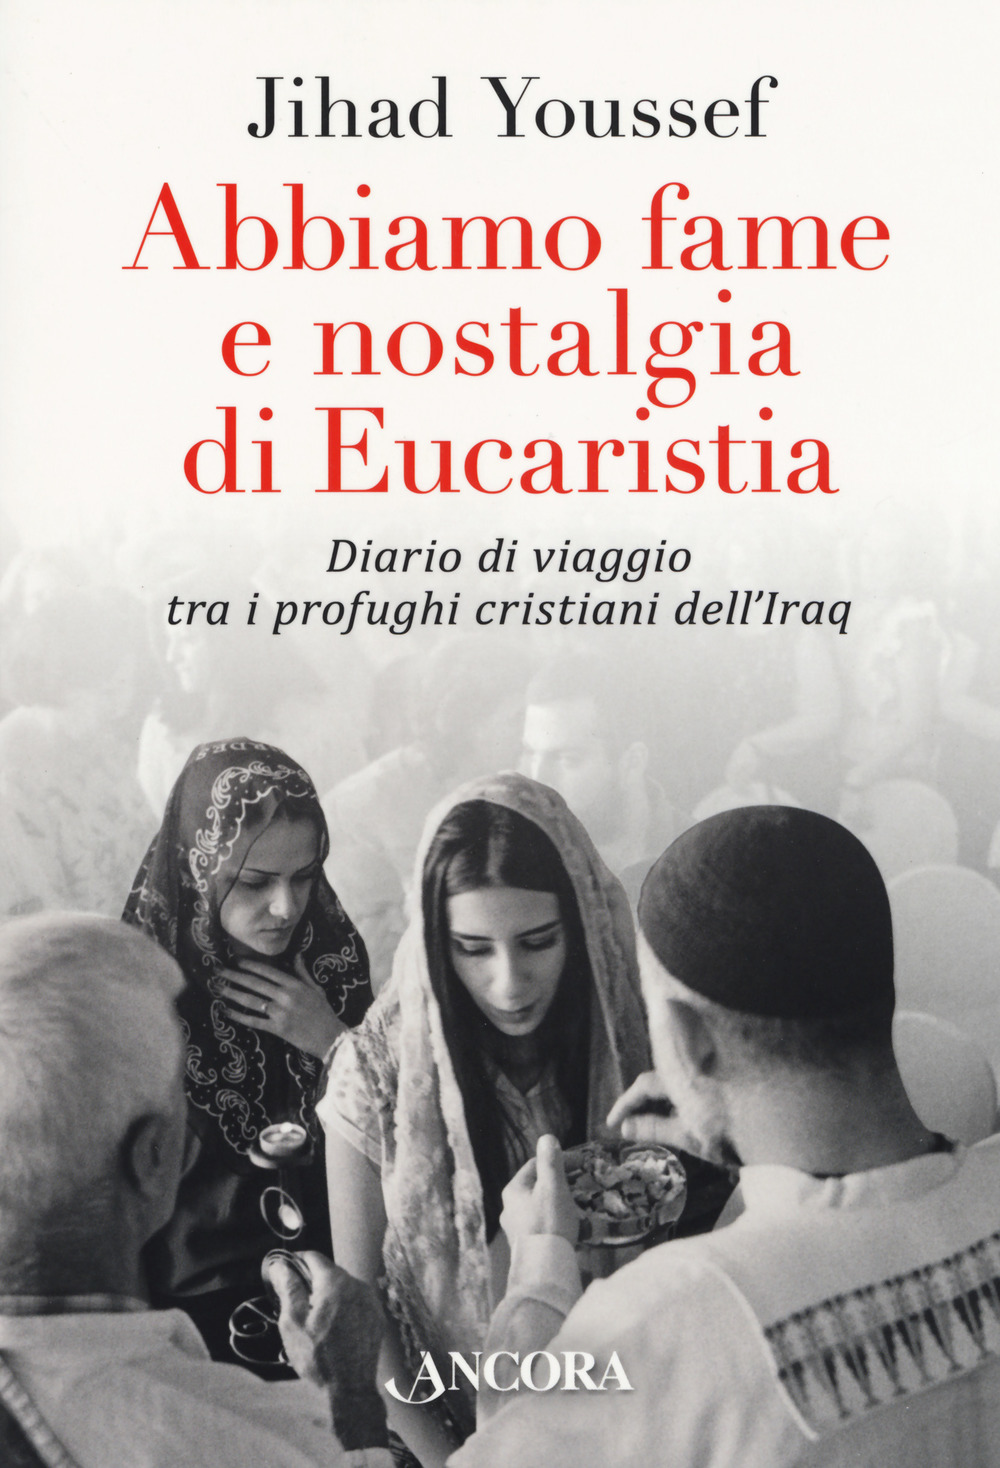 Image of Abbiamo fame e nostalgia di eucaristia. Diario di viaggio tra i profughi cristiani dell'Iraq